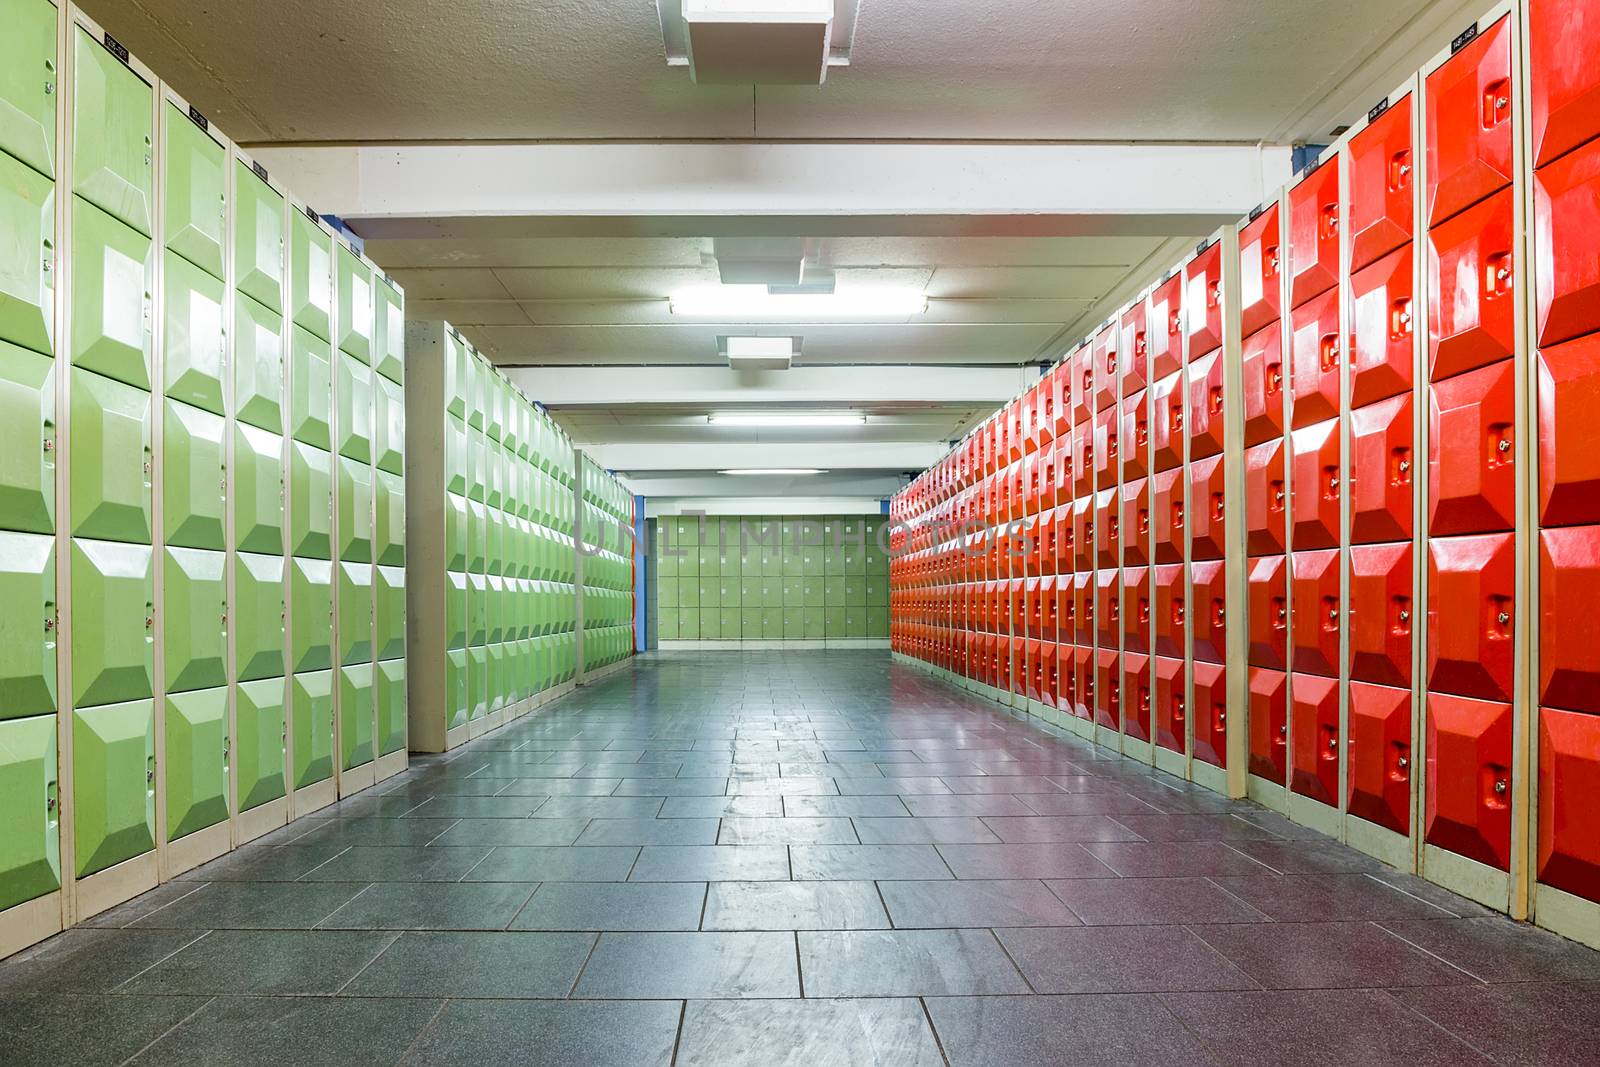 Corridor with lockers in school building by BenSchonewille